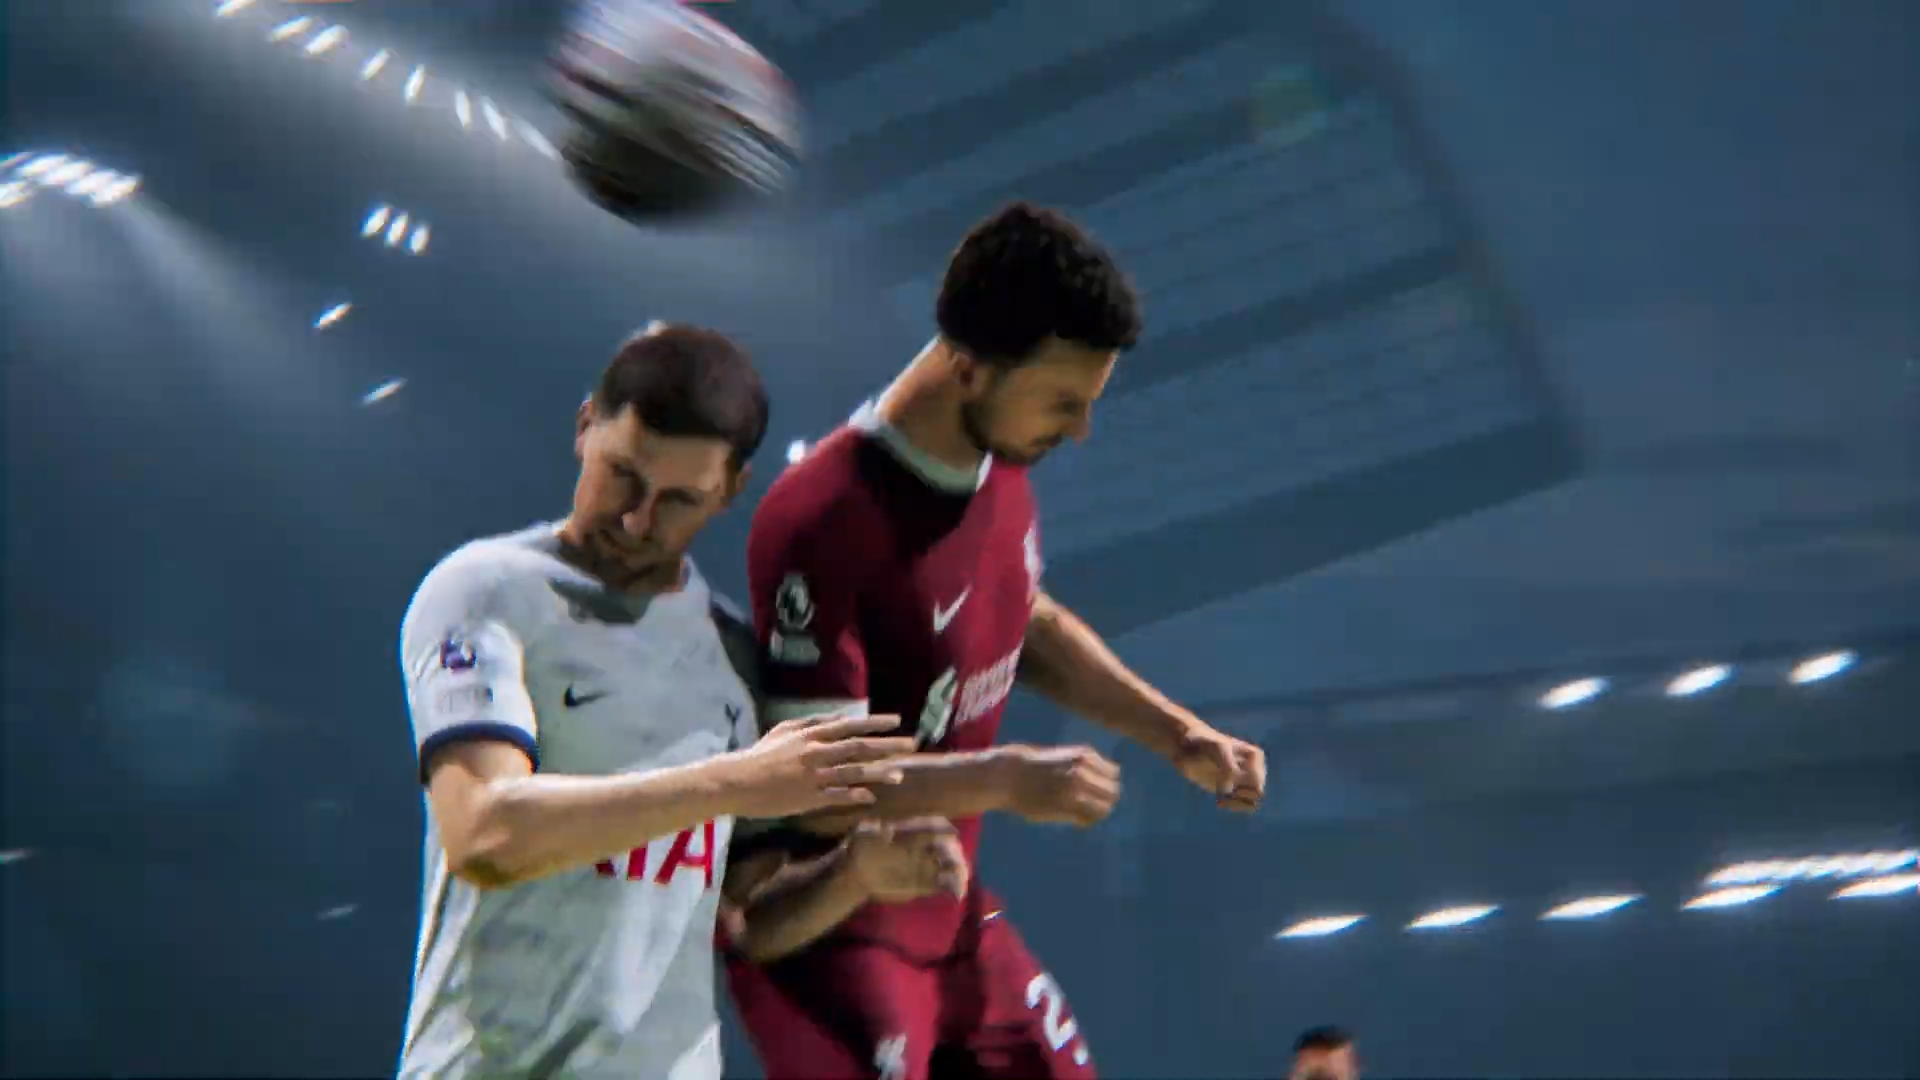 FIFA 22: trailer oficial e outras novidades anunciadas - Computadores -  SAPO Tek